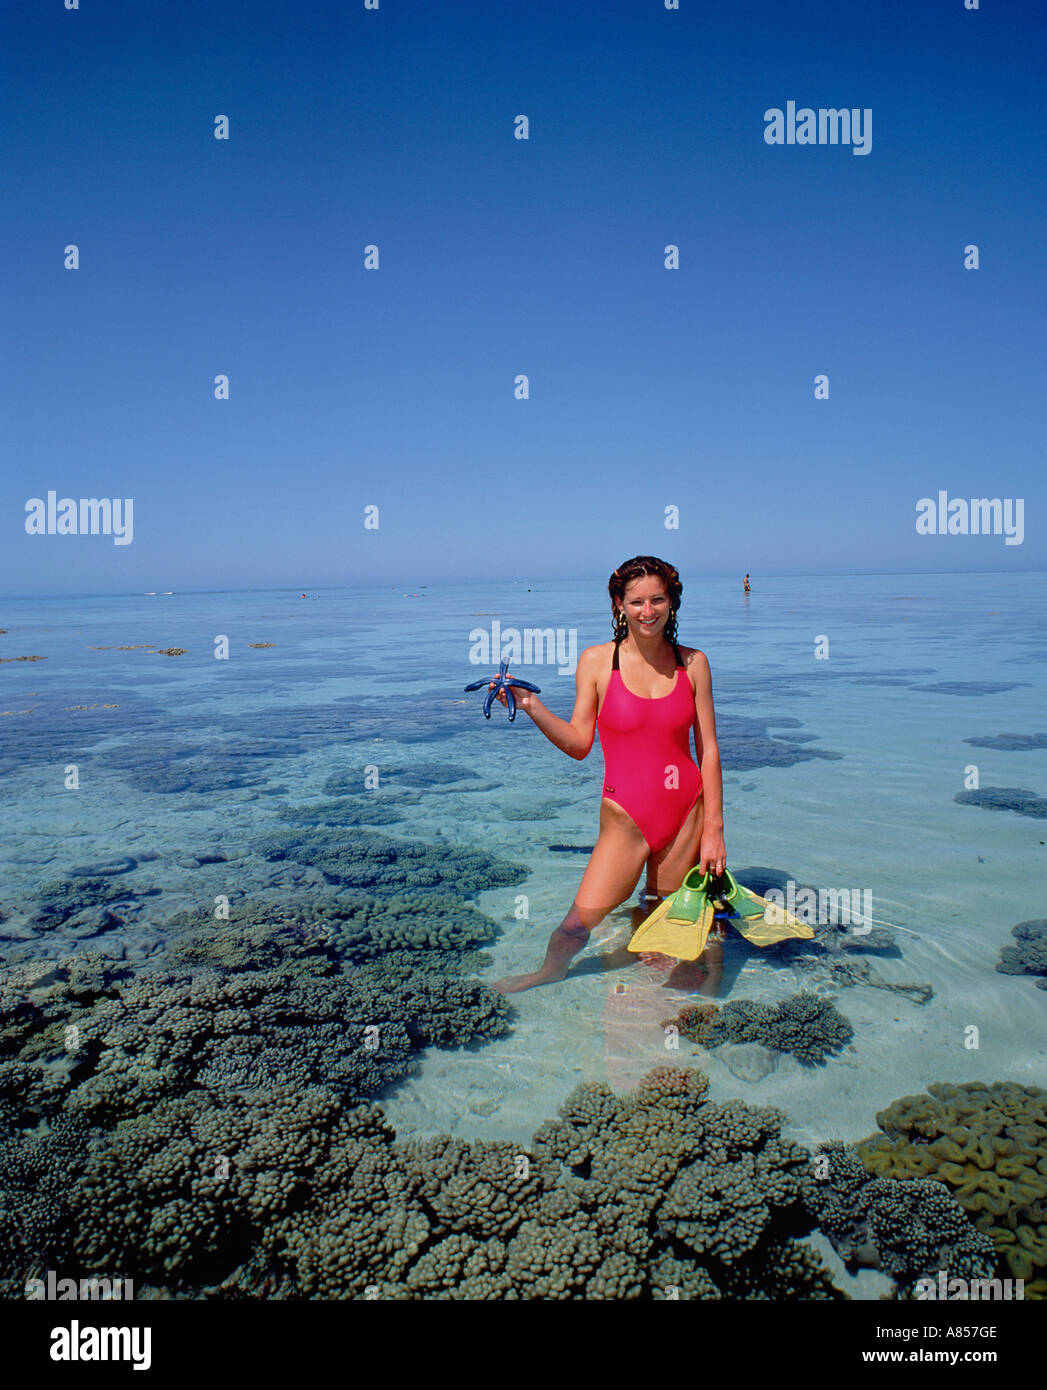 Australien. Queensland. Great Barrier Reef. Schnorcheln. Junge Frau im Badeanzug im flachen Wasser stehend, hält einen Seestern. Stockfoto